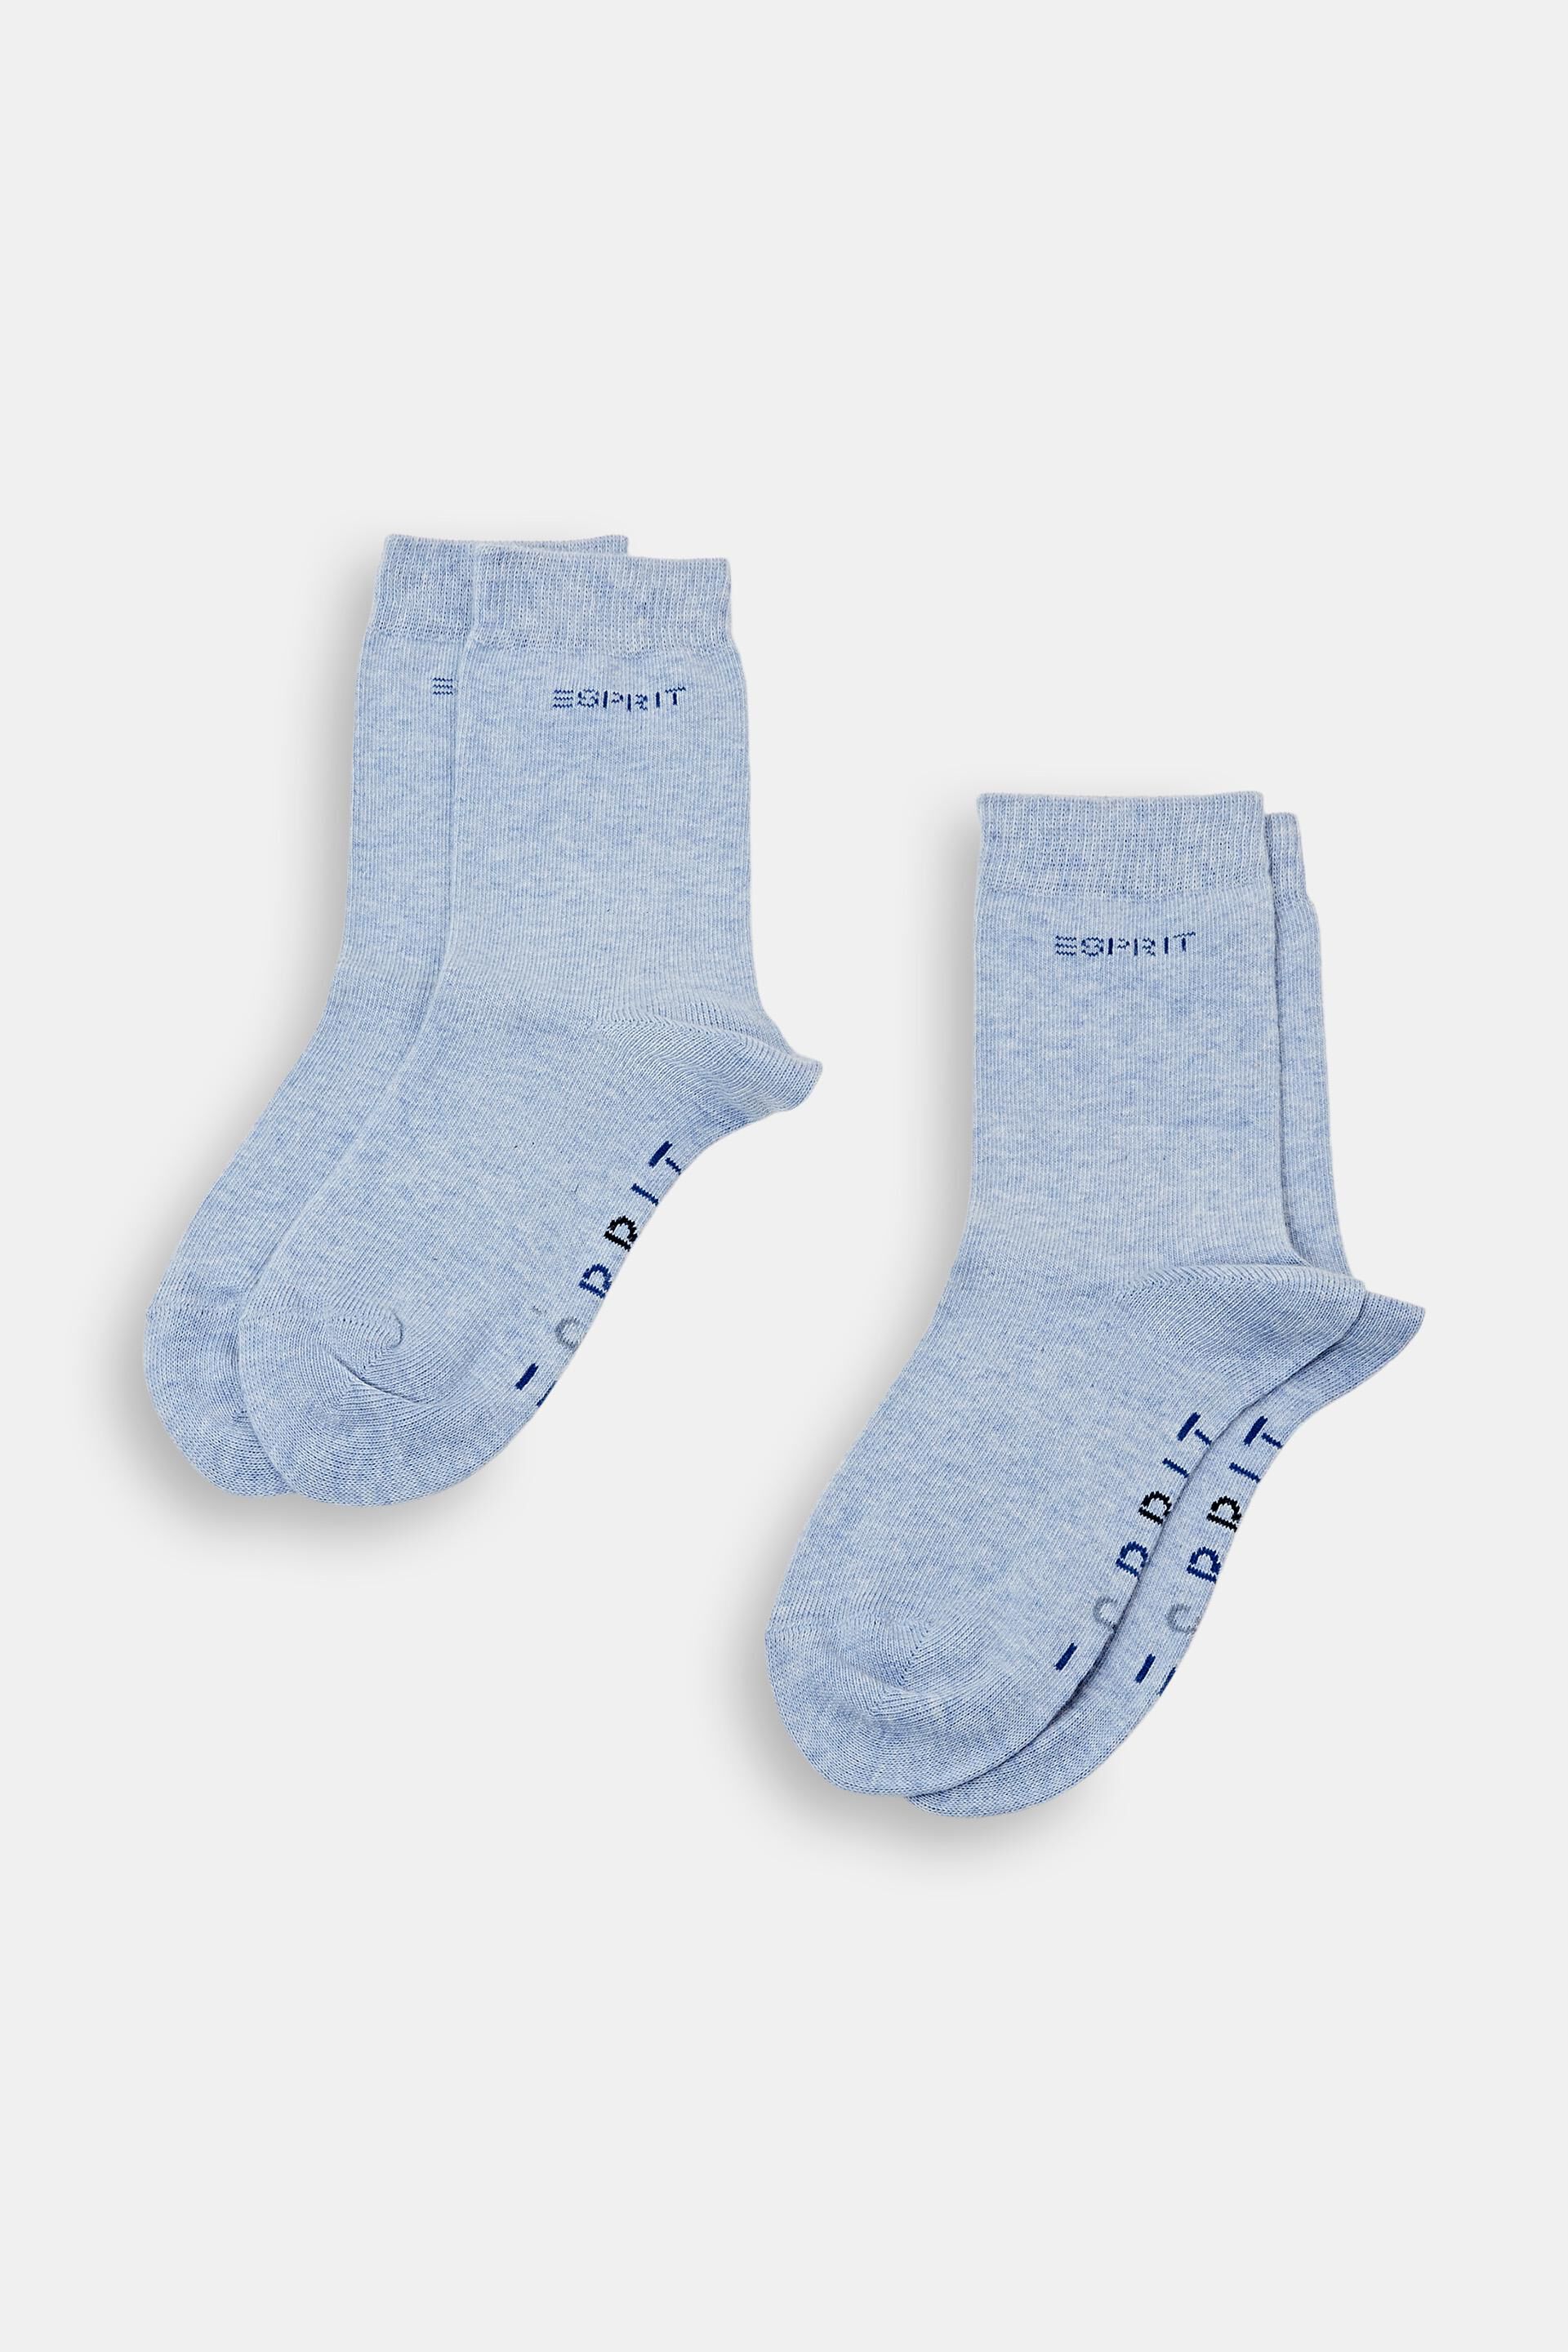 Esprit Outlet Kids' socks with logo